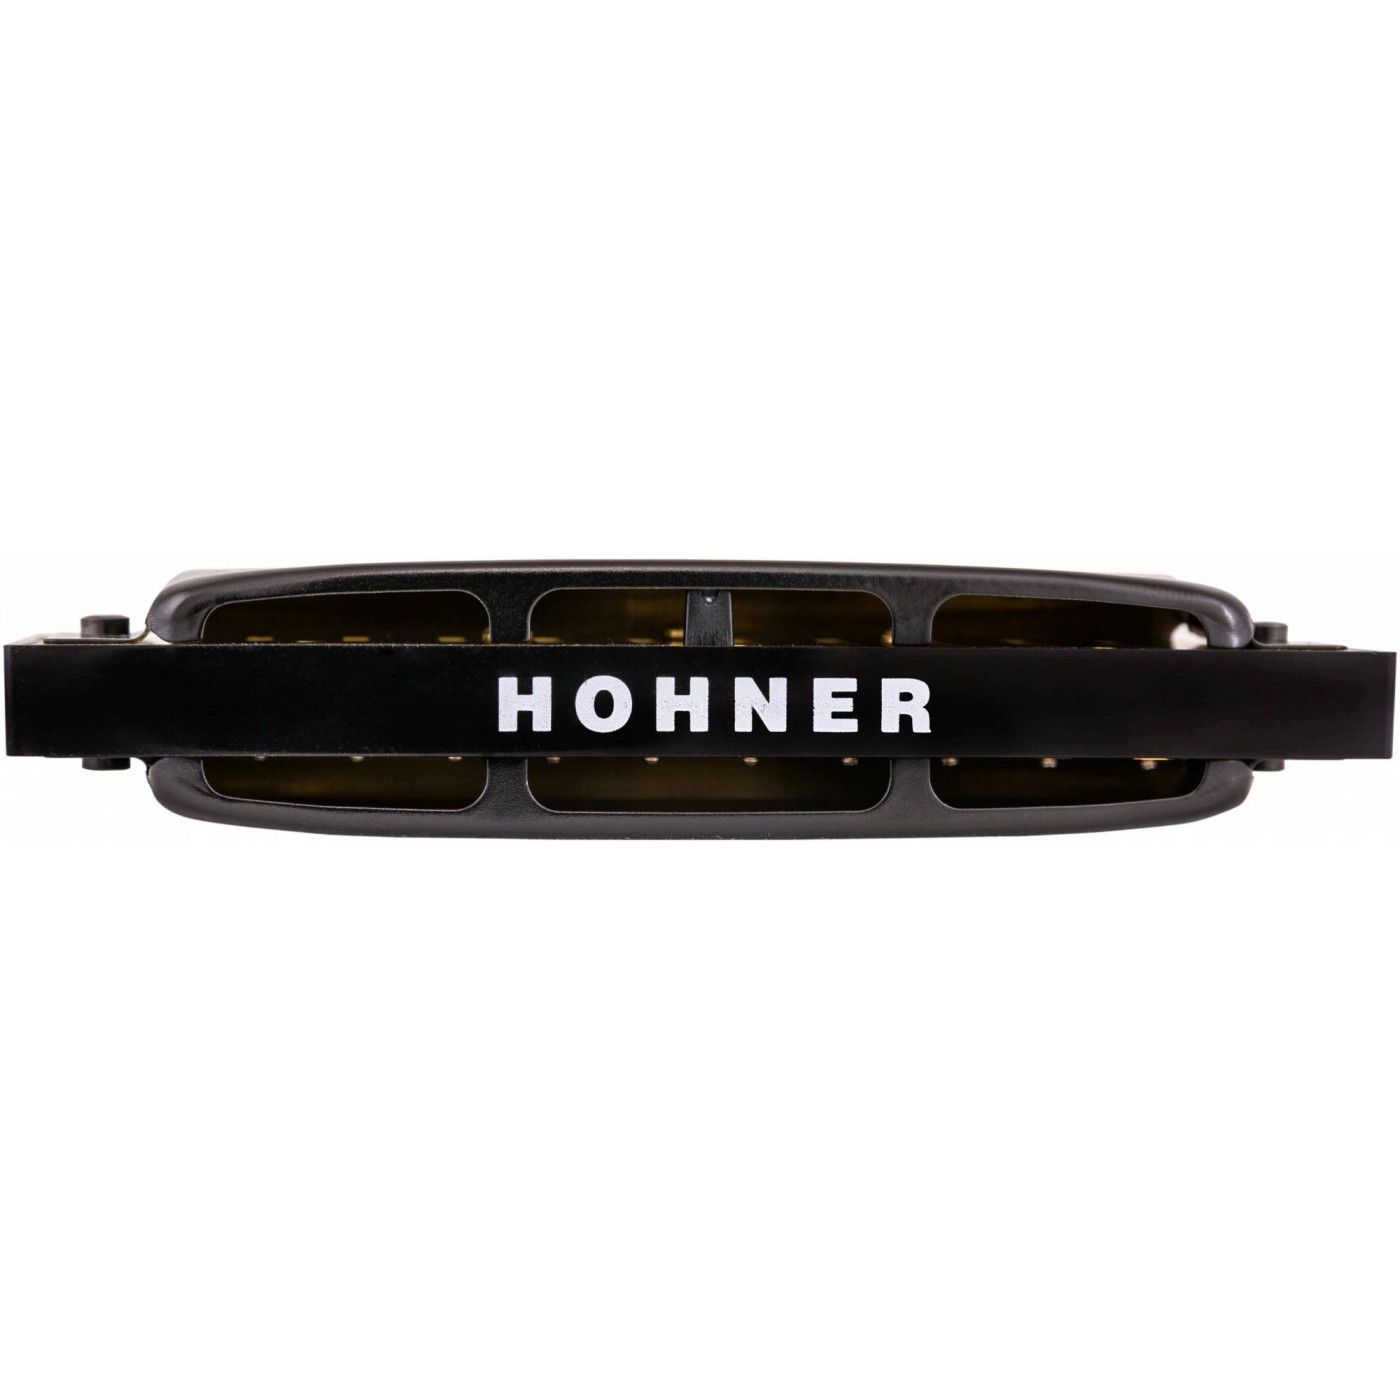 Детальная картинка товара Hohner Pro Harp 562/20 MS B в магазине Музыкальный Мир